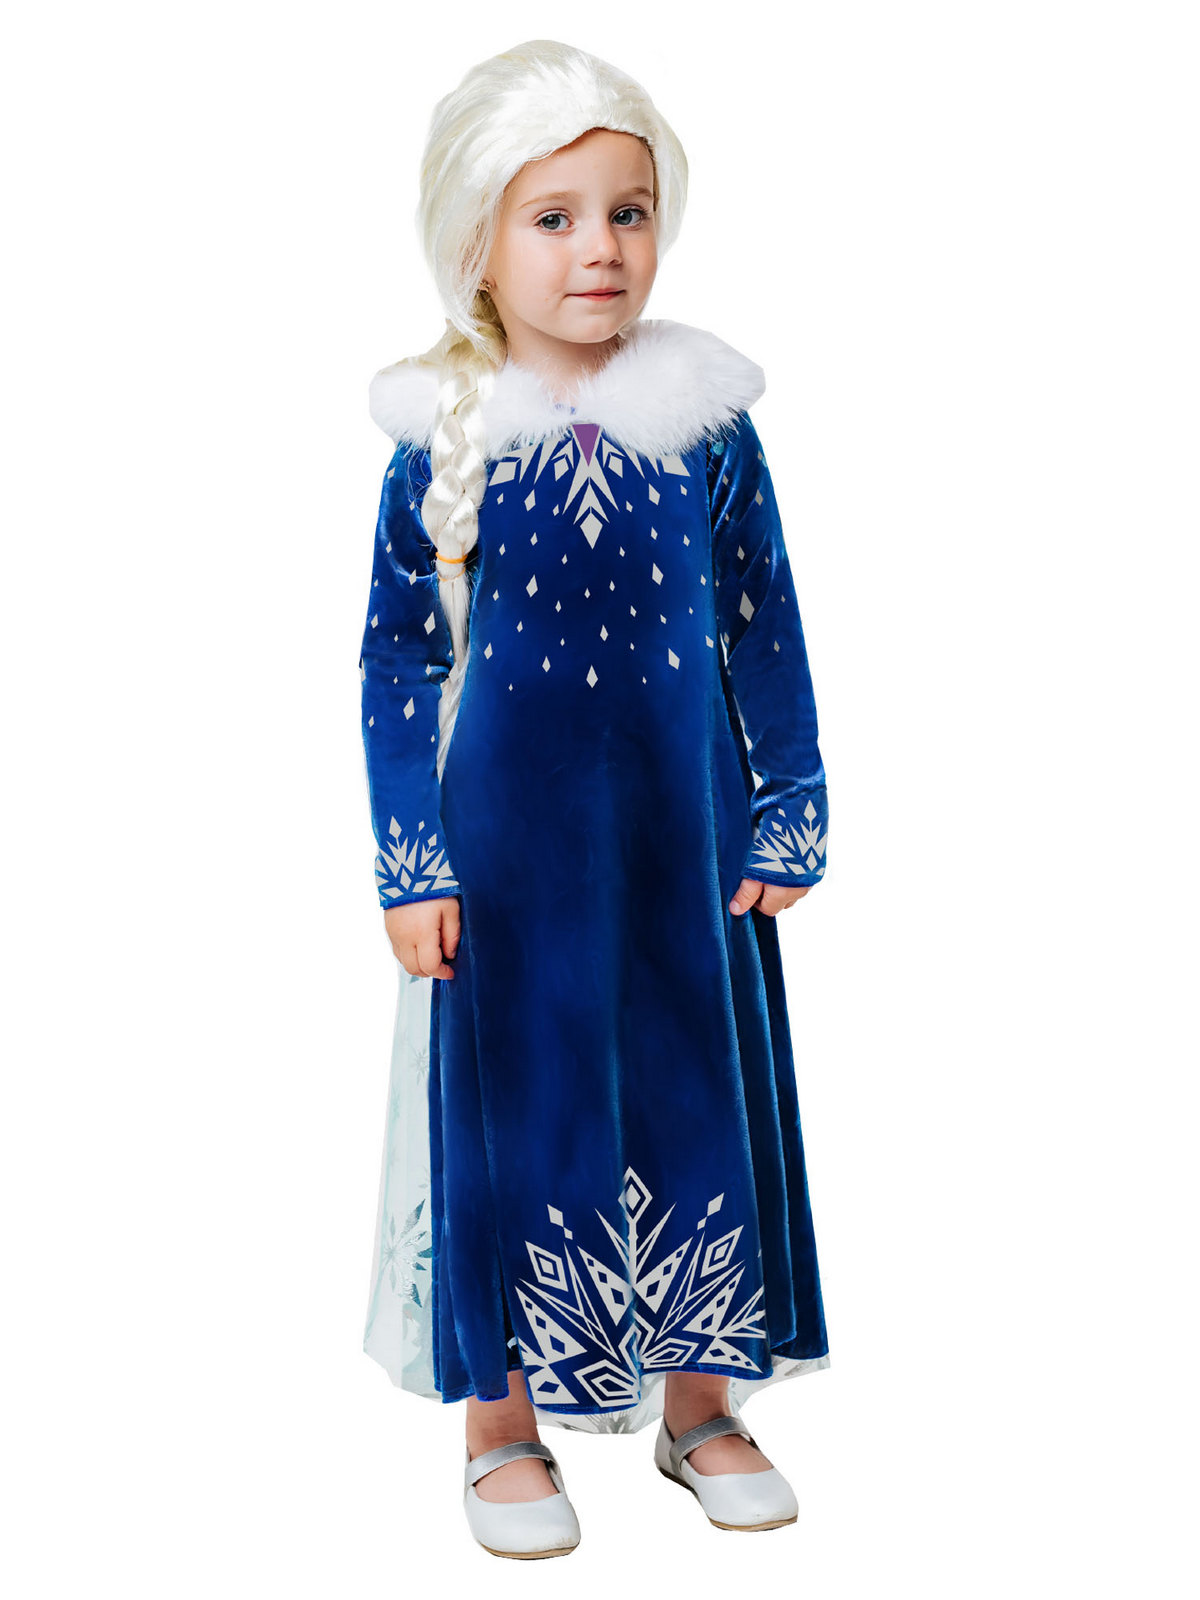 Карнавальный костюм Batik 9004 к-21 Эльза зимнее платье, синий, 116 карнавальный костюм batik 9004 к 21 эльза зимнее платье синий 116